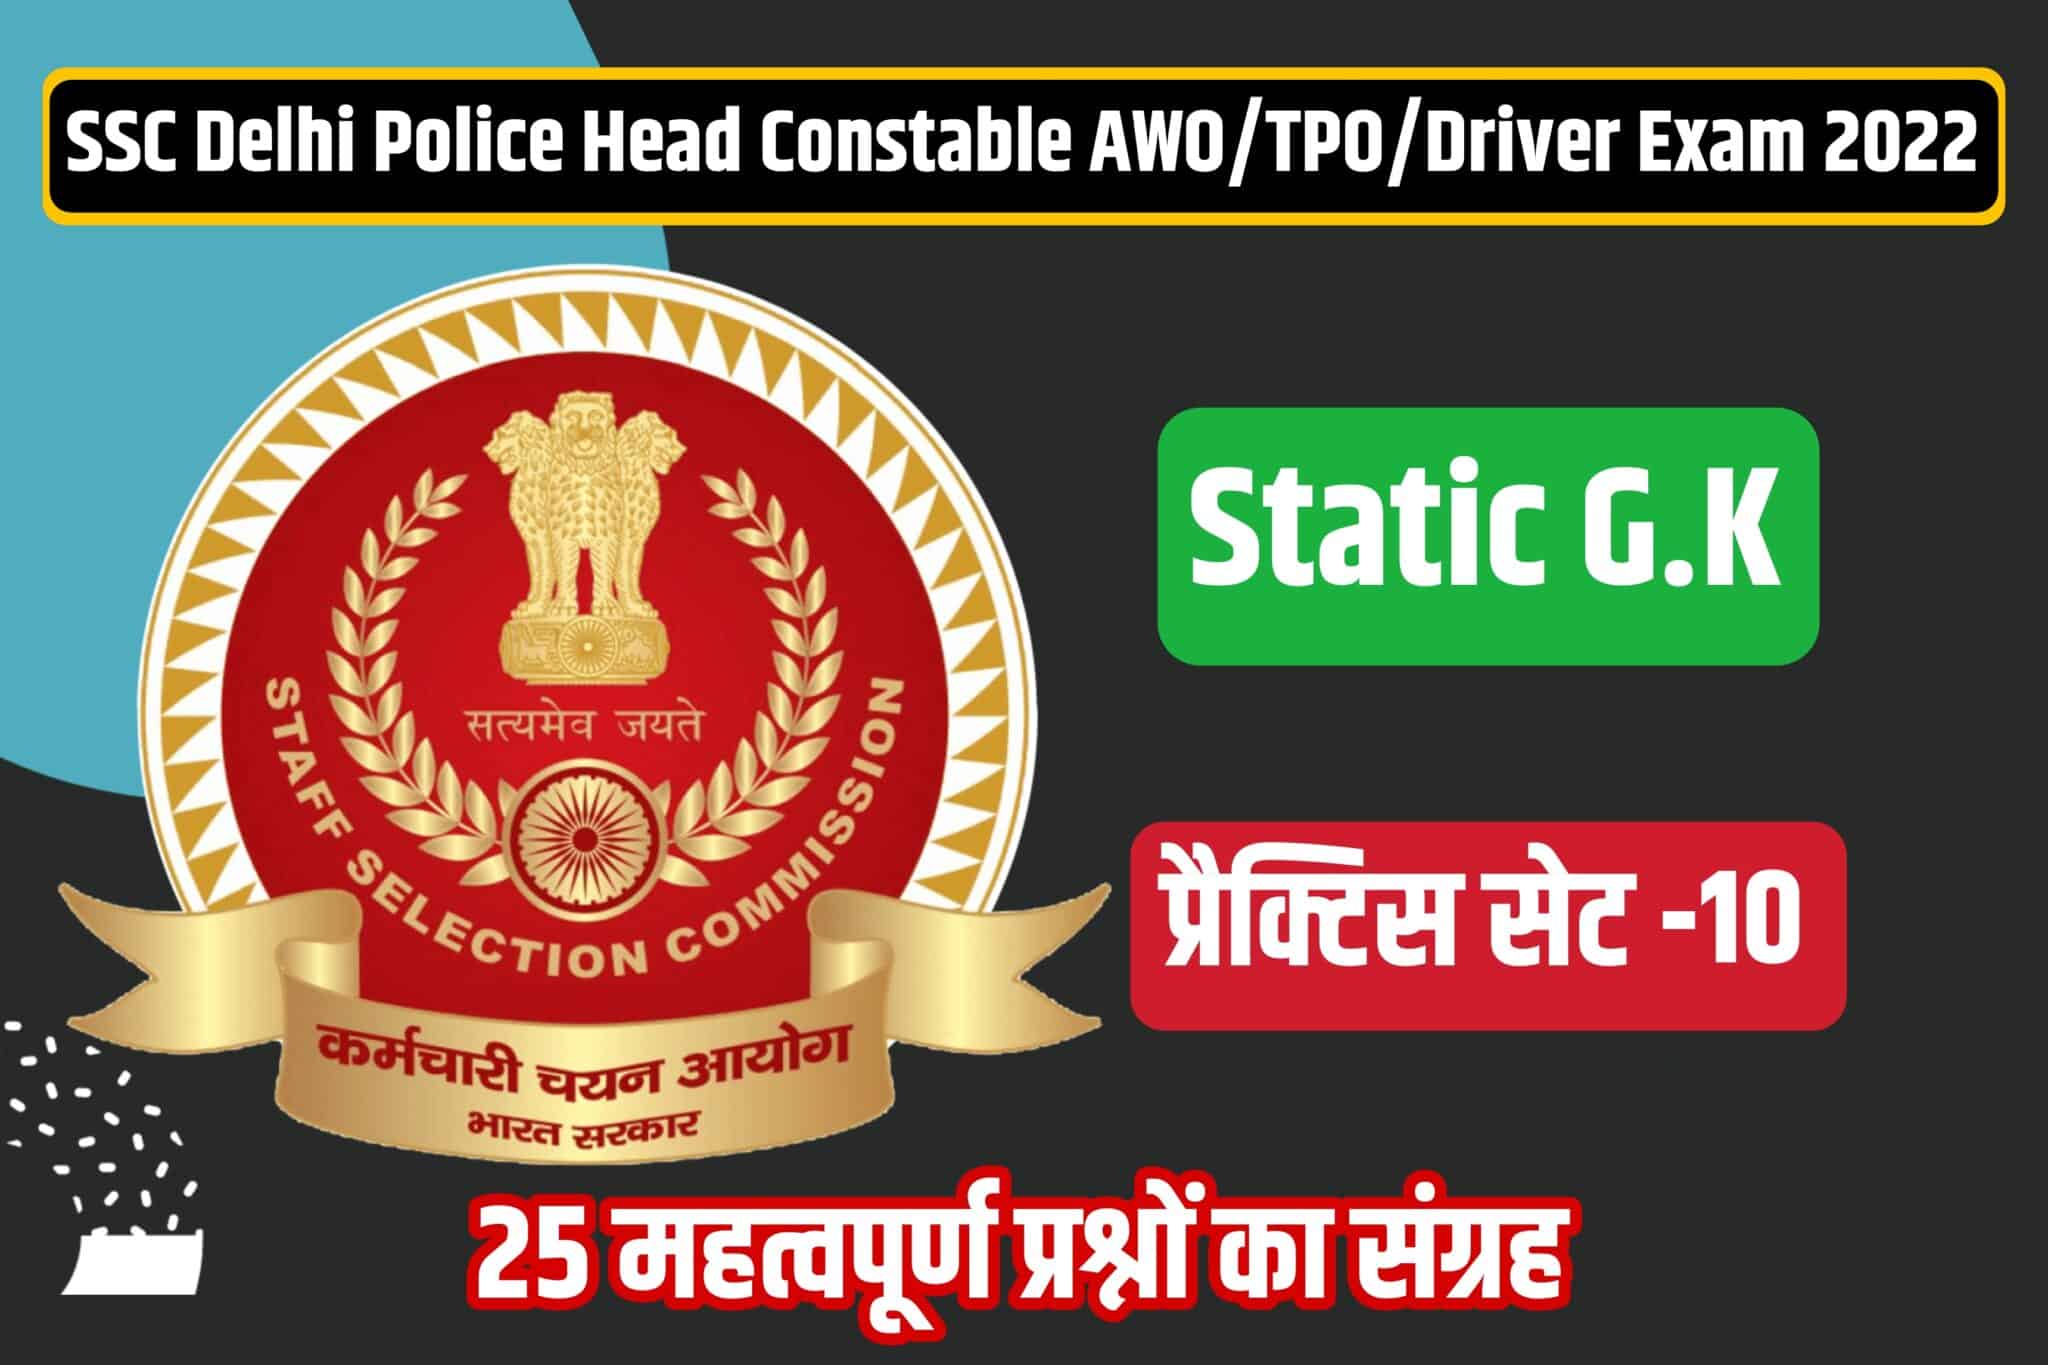 SSC Delhi Police Head Constable /AWO/TPO/Driver Static GK Practice Set 10 | परीक्षा में पूछे जाने योग्य 25 महत्वपूर्ण प्रश्नों का संग्रह, अवश्य पढ़ें